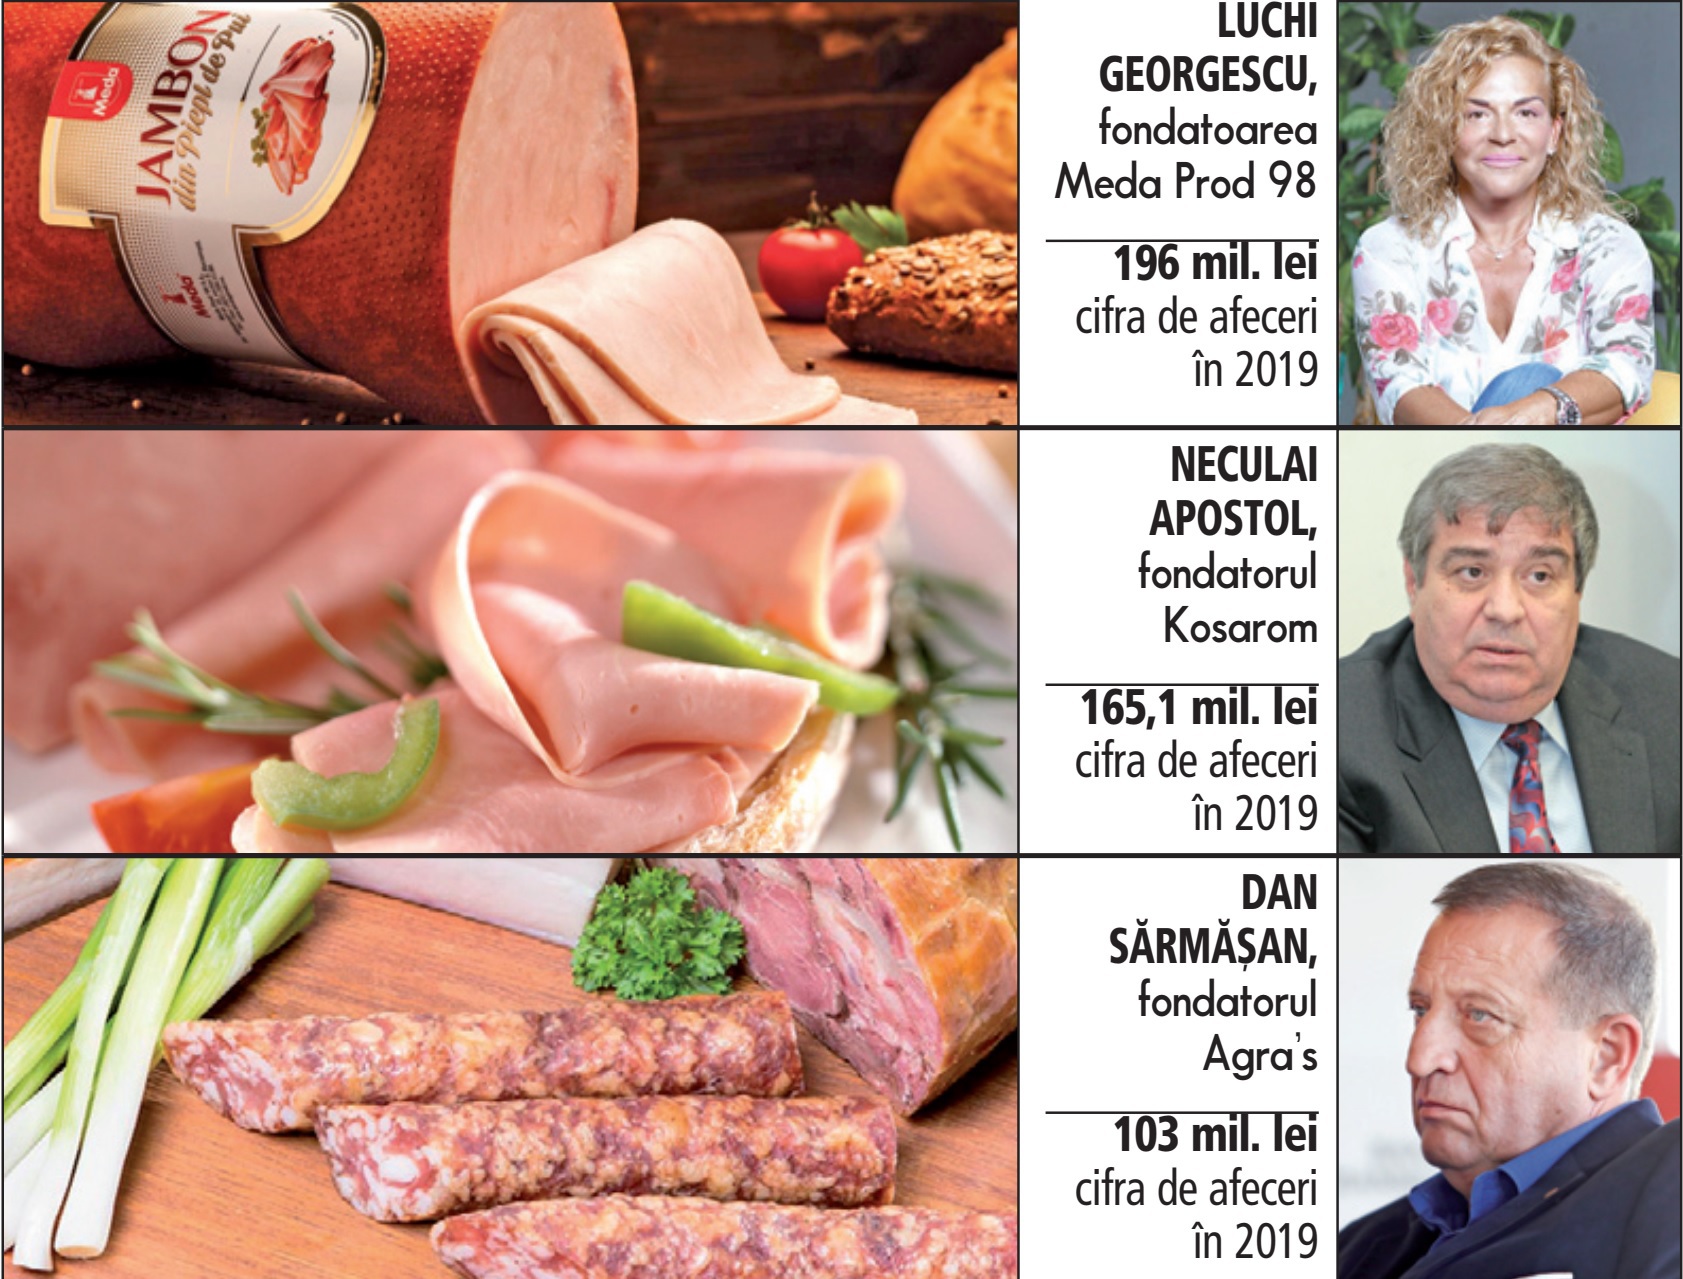 Ce se mai întâmplă în businessul din România. Industria procesării de carne ar putea da mai multe tranzacţii: trei afaceri româneşti sunt „în piaţă“ la vânzare. Meda Prod 98, Kosarom şi Agra’s sunt cele trei companii aflate în prezent pe piaţă la vânzare, în diferite stadii ale procesului